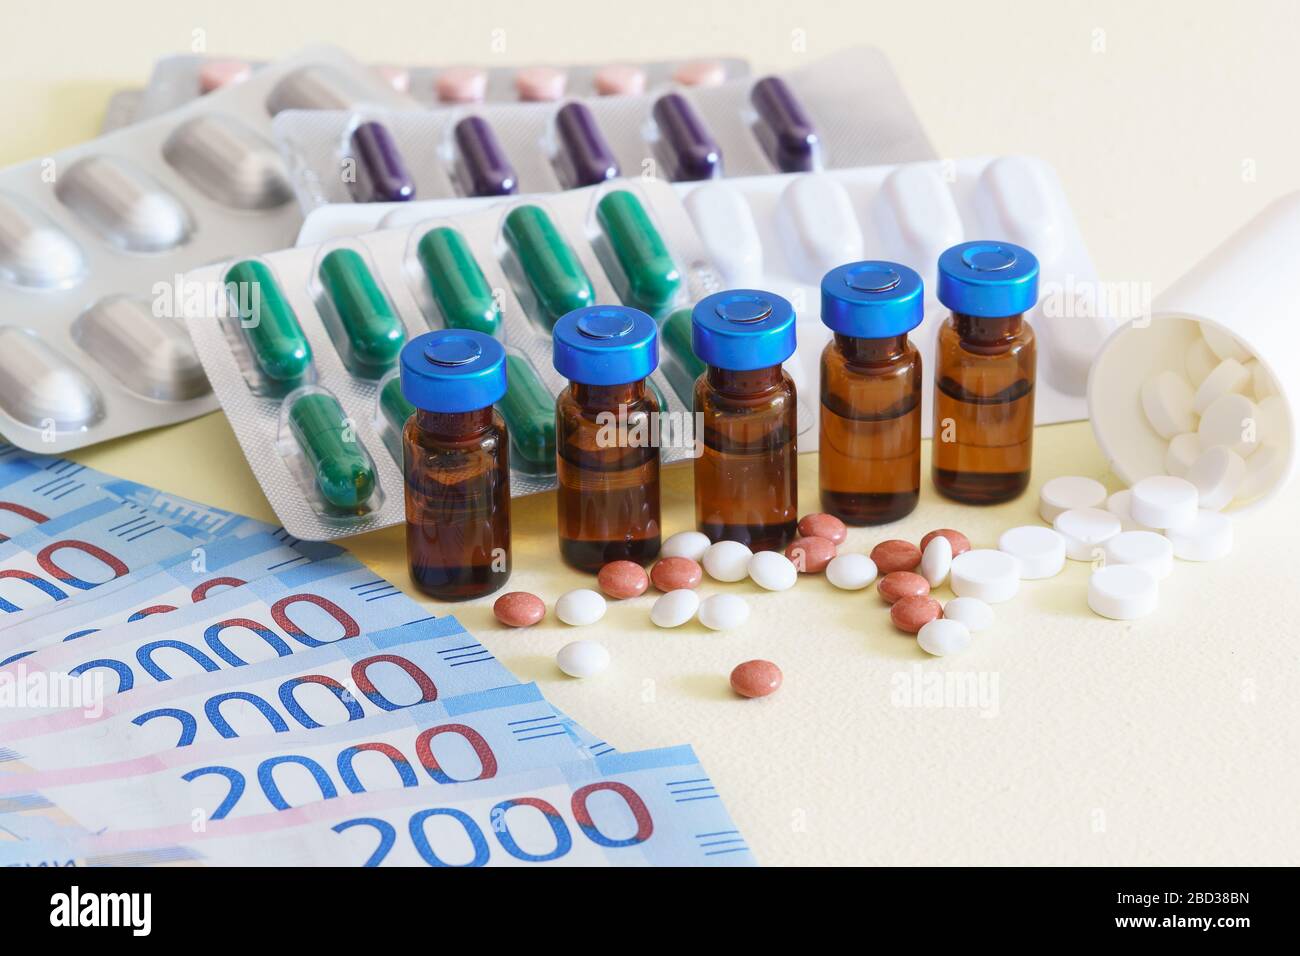 Fiale di farmaci iniettabili, pillole sparse, e denaro russo su una tavola gialla. Trattamento costoso. Messa a fuoco selettiva Foto Stock